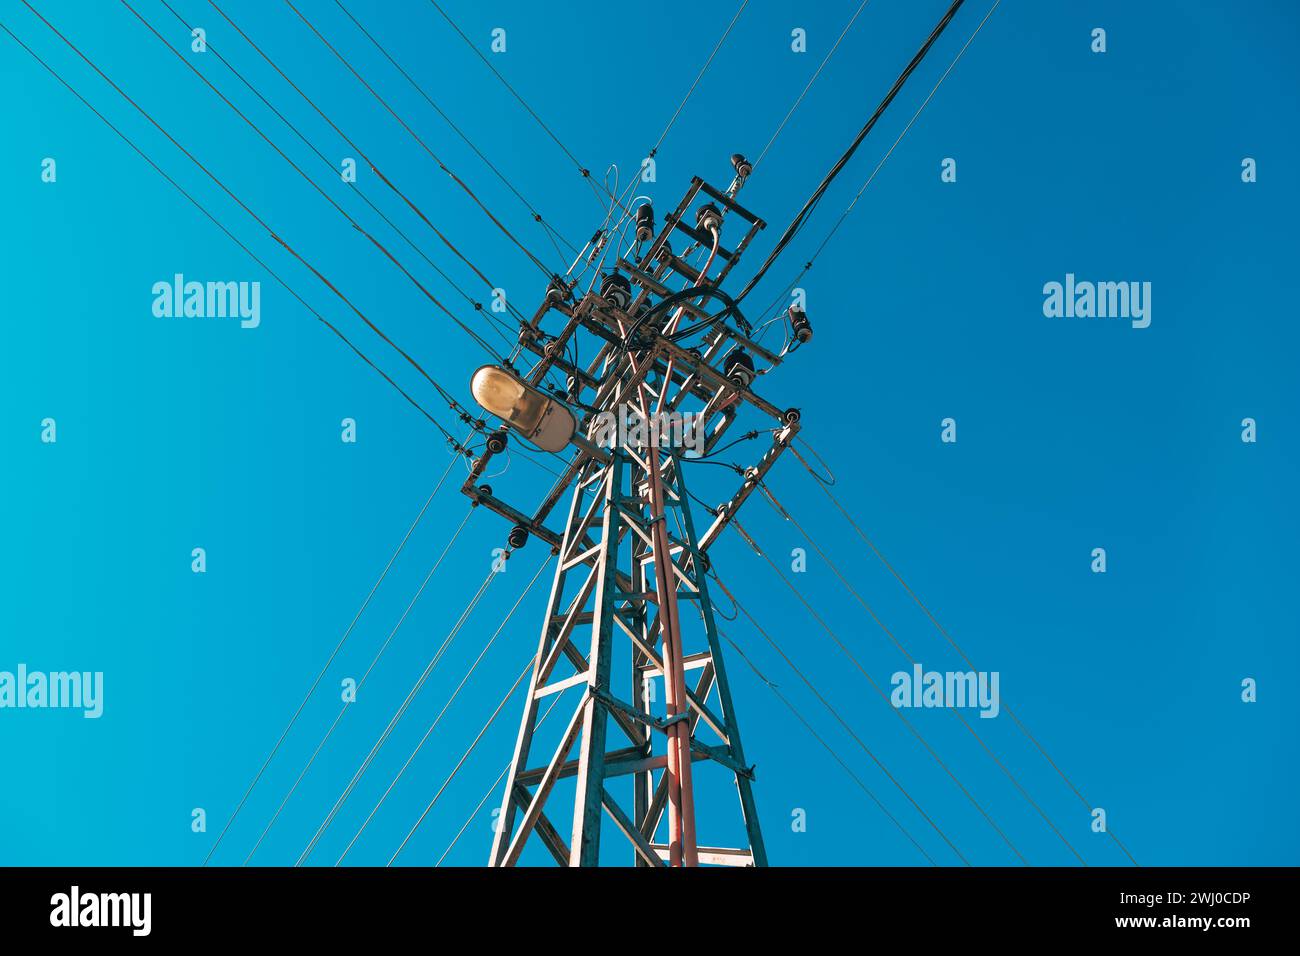 Poste de electricidad con cables de arriba y lámpara de luz de calle contra el cielo azul Foto de stock